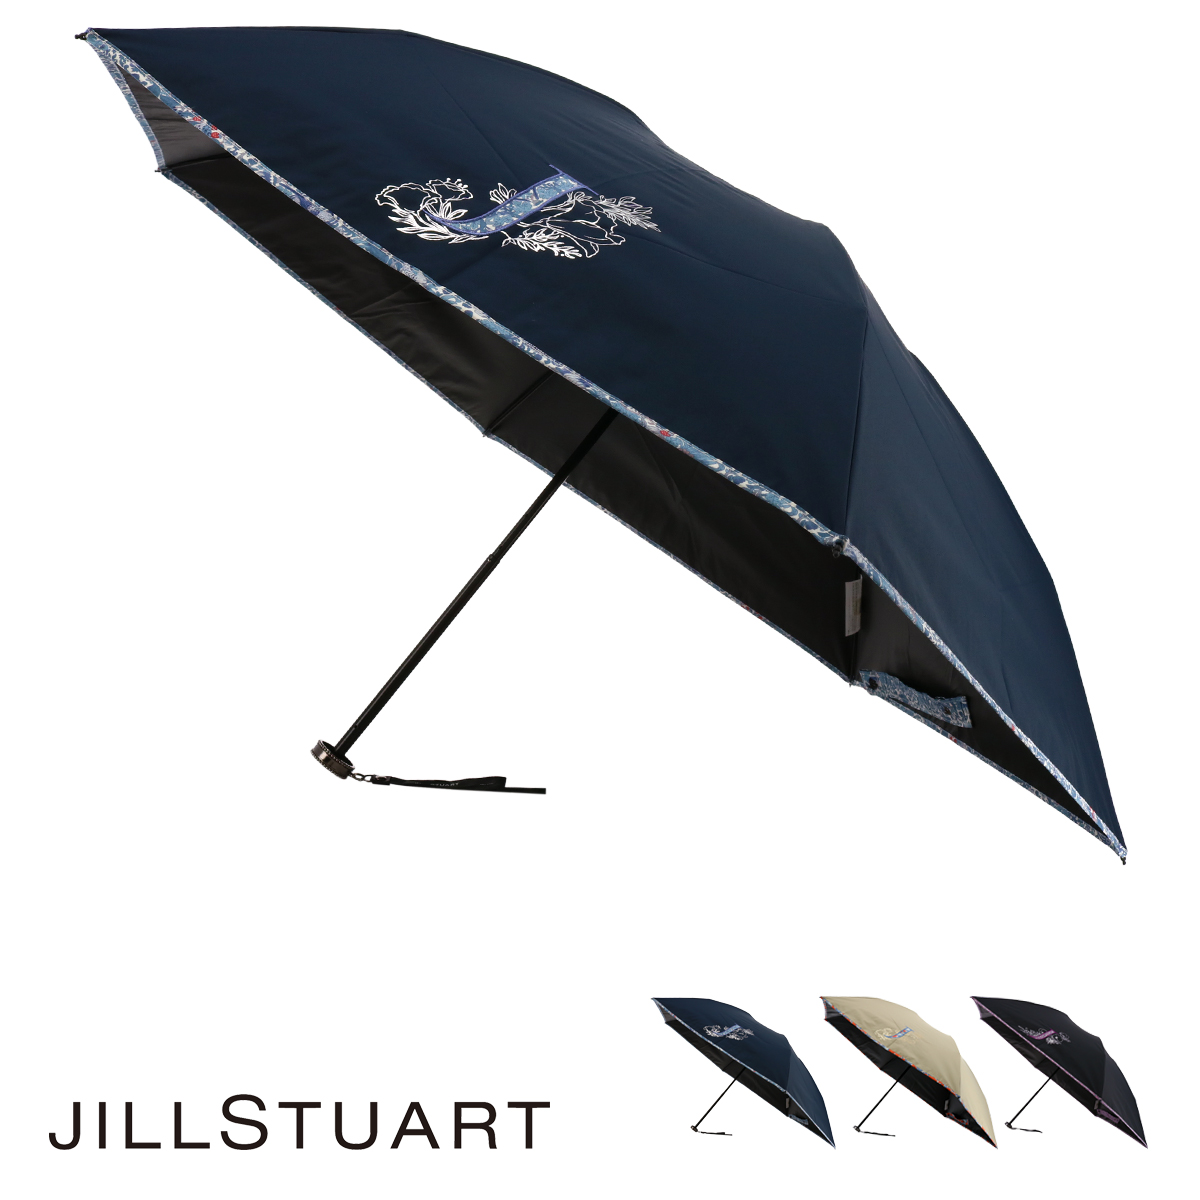 ジルスチュアート 折りたたみ傘 ミニ傘 レディース 17743 JILLSTUART ギフト プレゼント 晴雨兼用 雨傘 日傘 UVカット 遮光 遮熱  リバティ ブランド